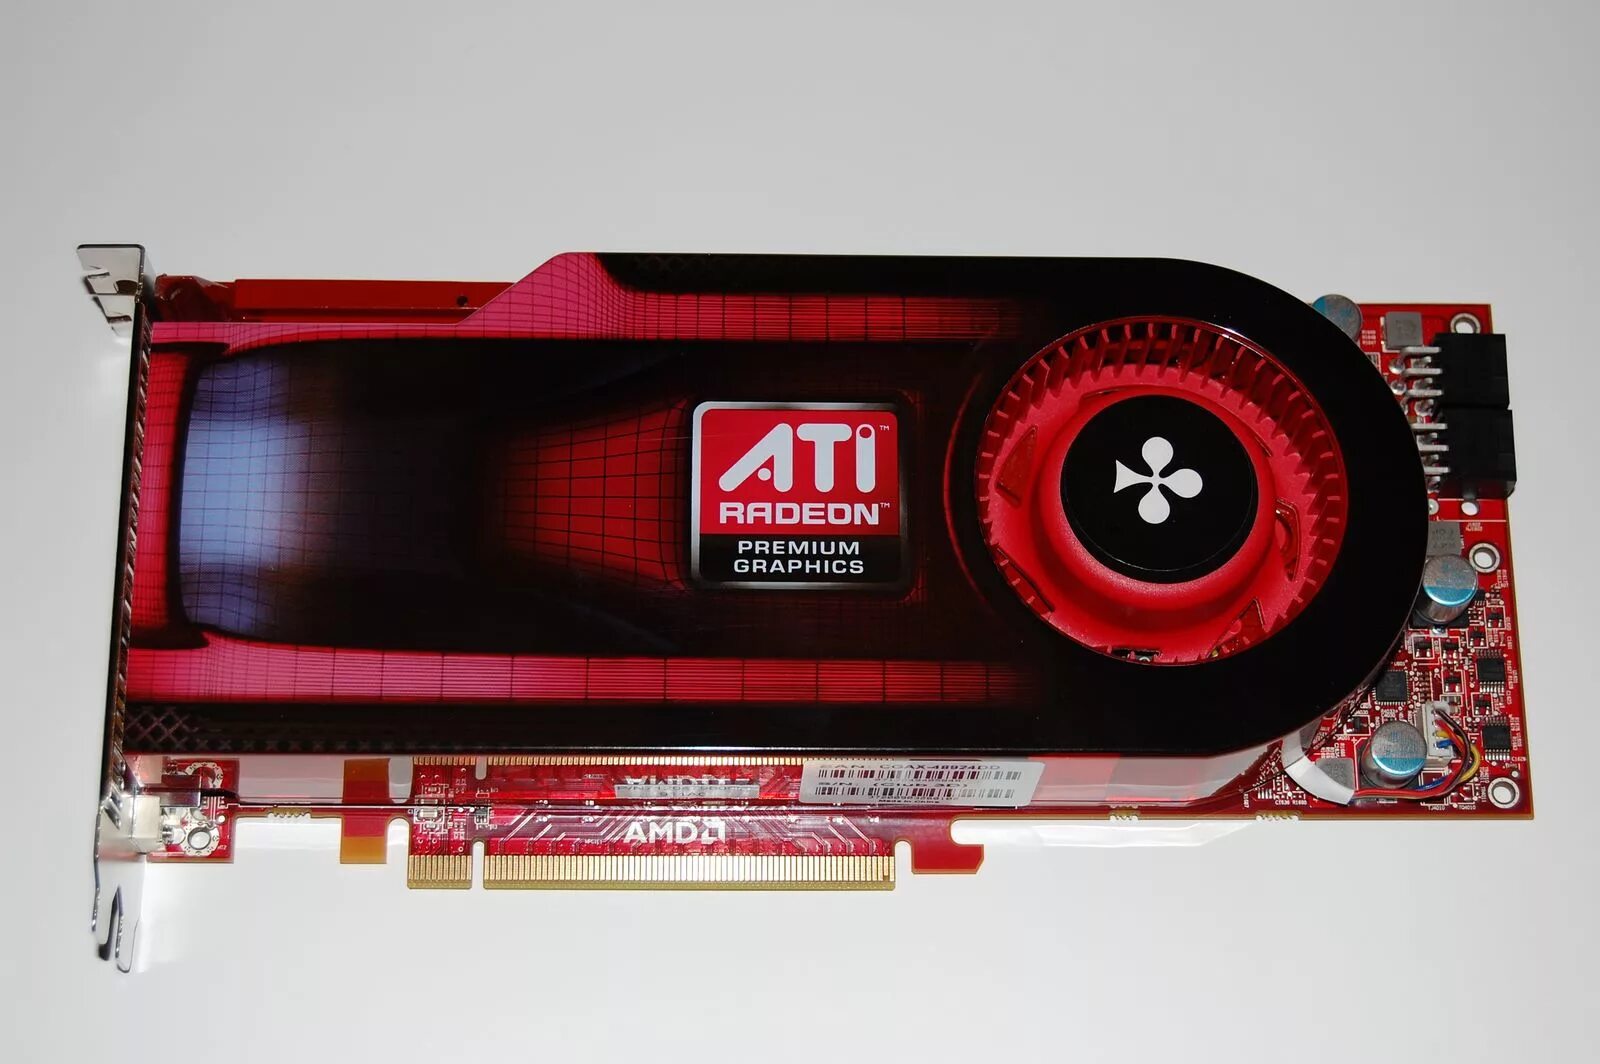 Ati radeon 4300 series. Видеокарта AMD ATI Radeon hd4890.